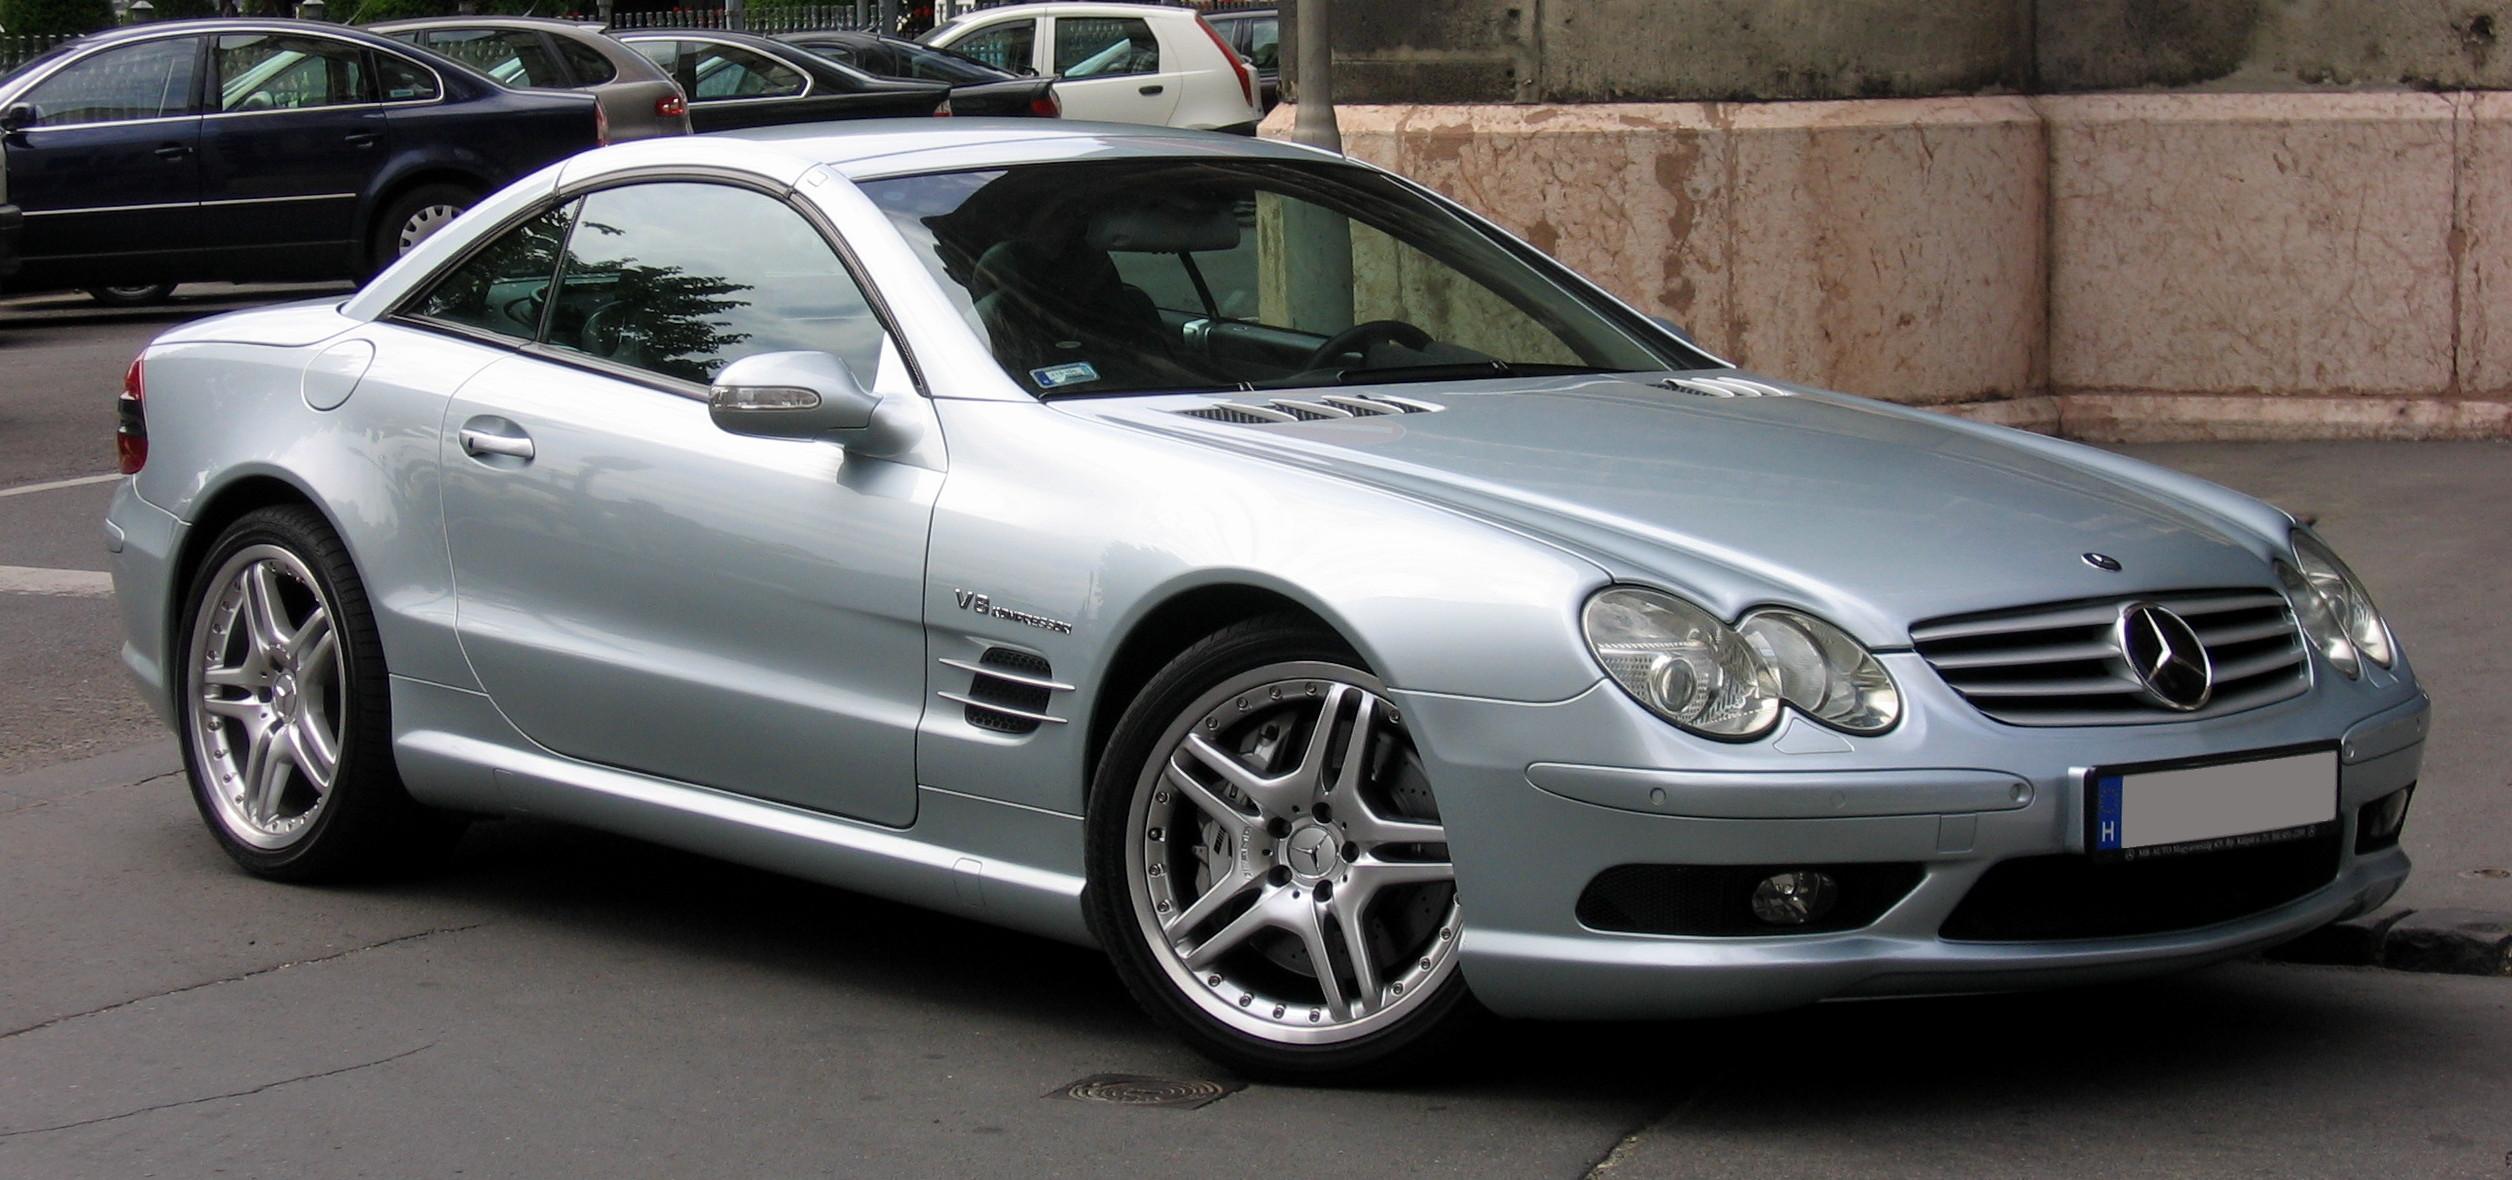 Mercedes benz net worth #2